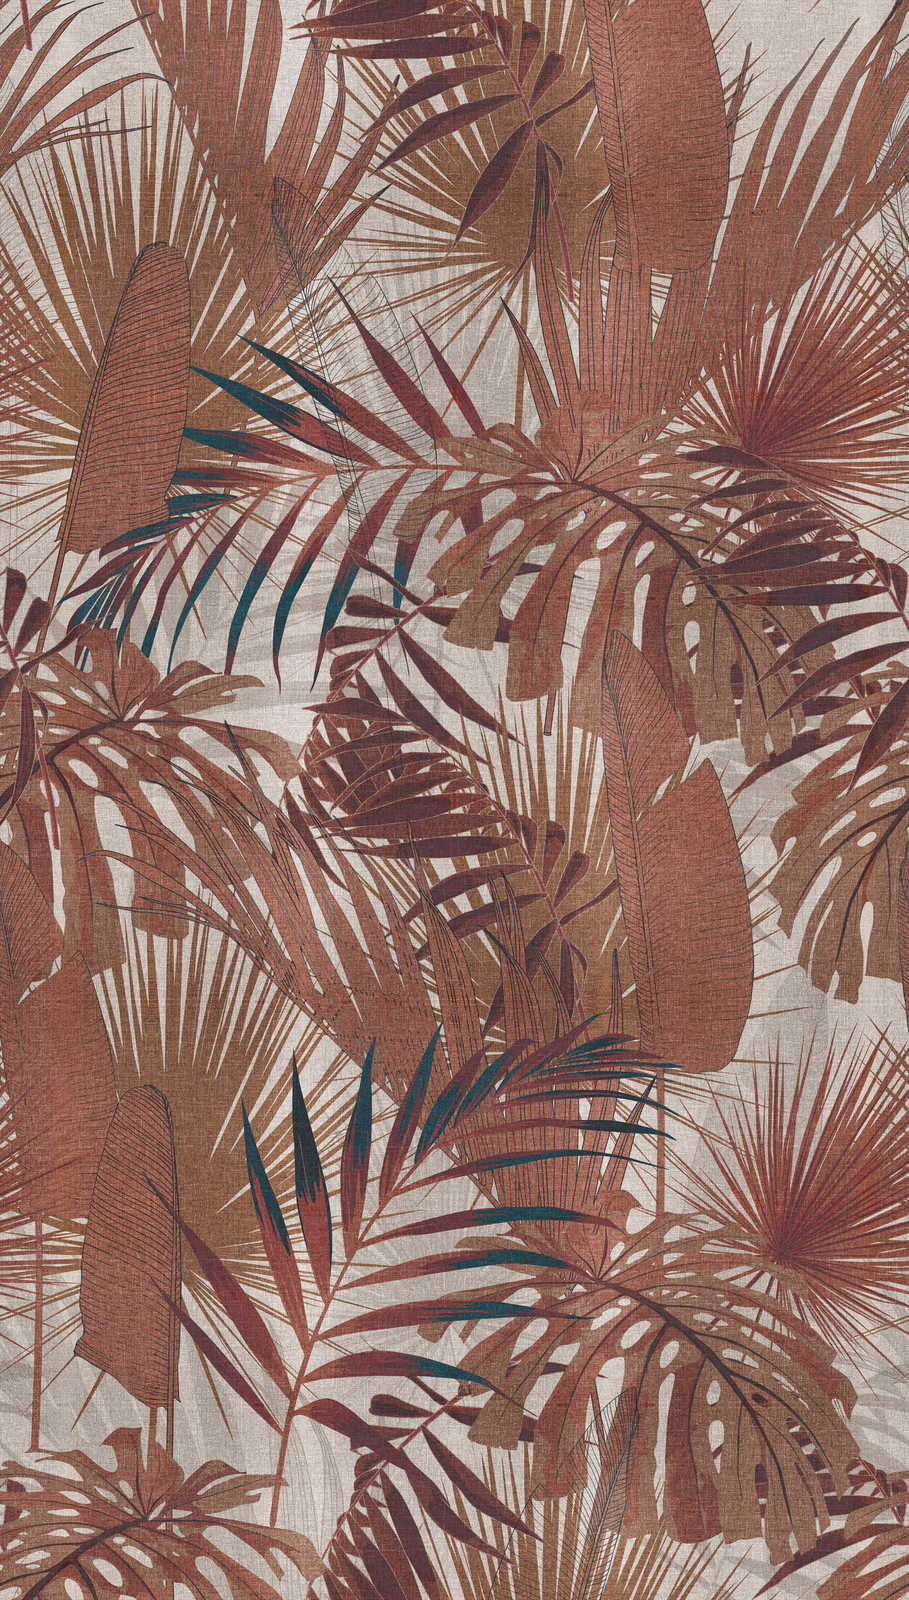             Papier peint intissé avec motif de feuilles de jungle - rouge-brun, beige
        